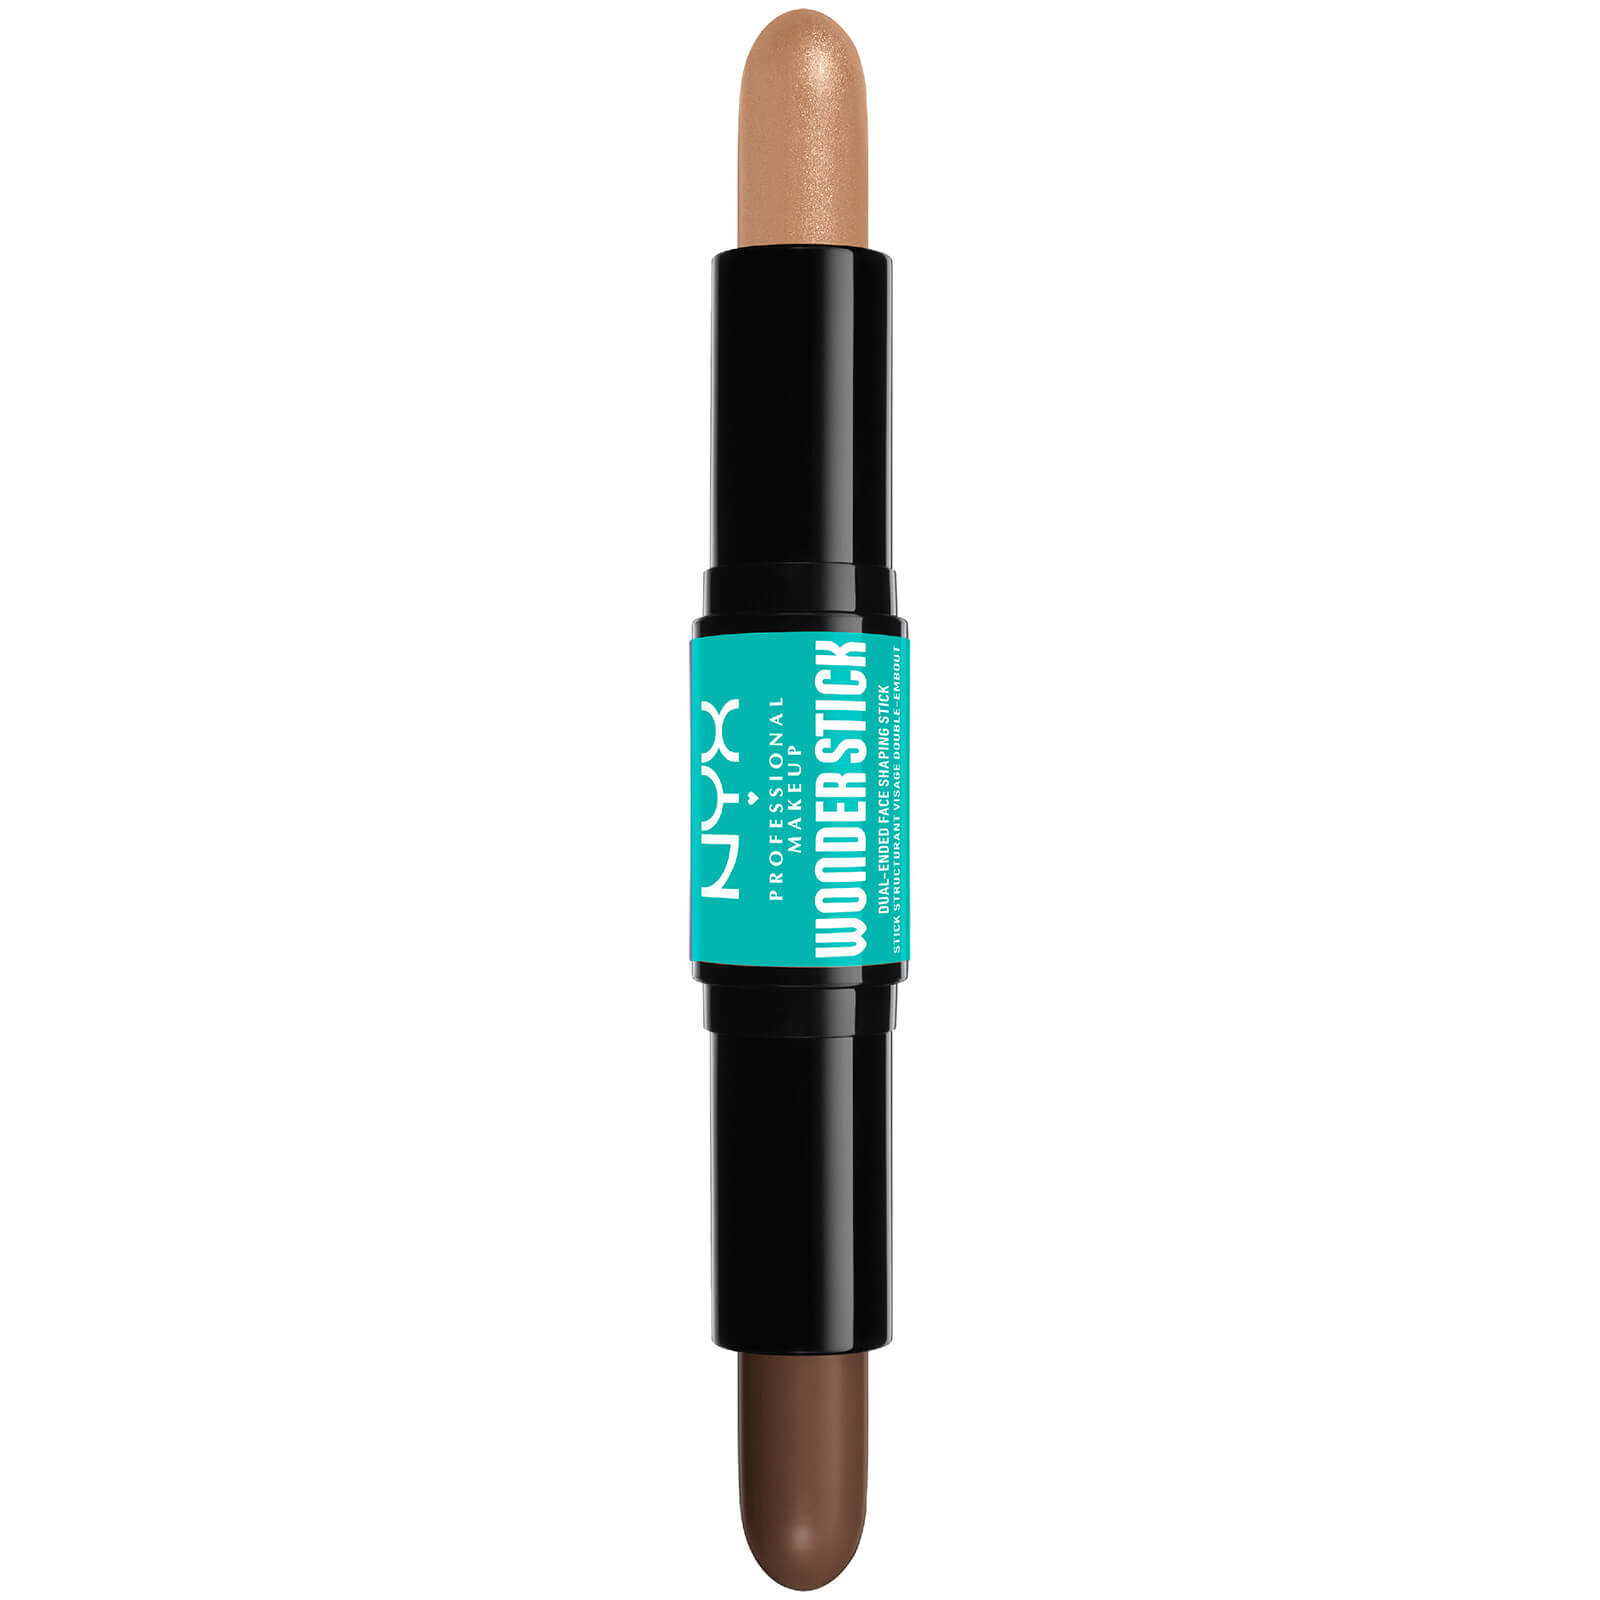 NYX Professional Makeup Wonder Stick Highlight and Contour Stick (Various Shades) - Medium Tan